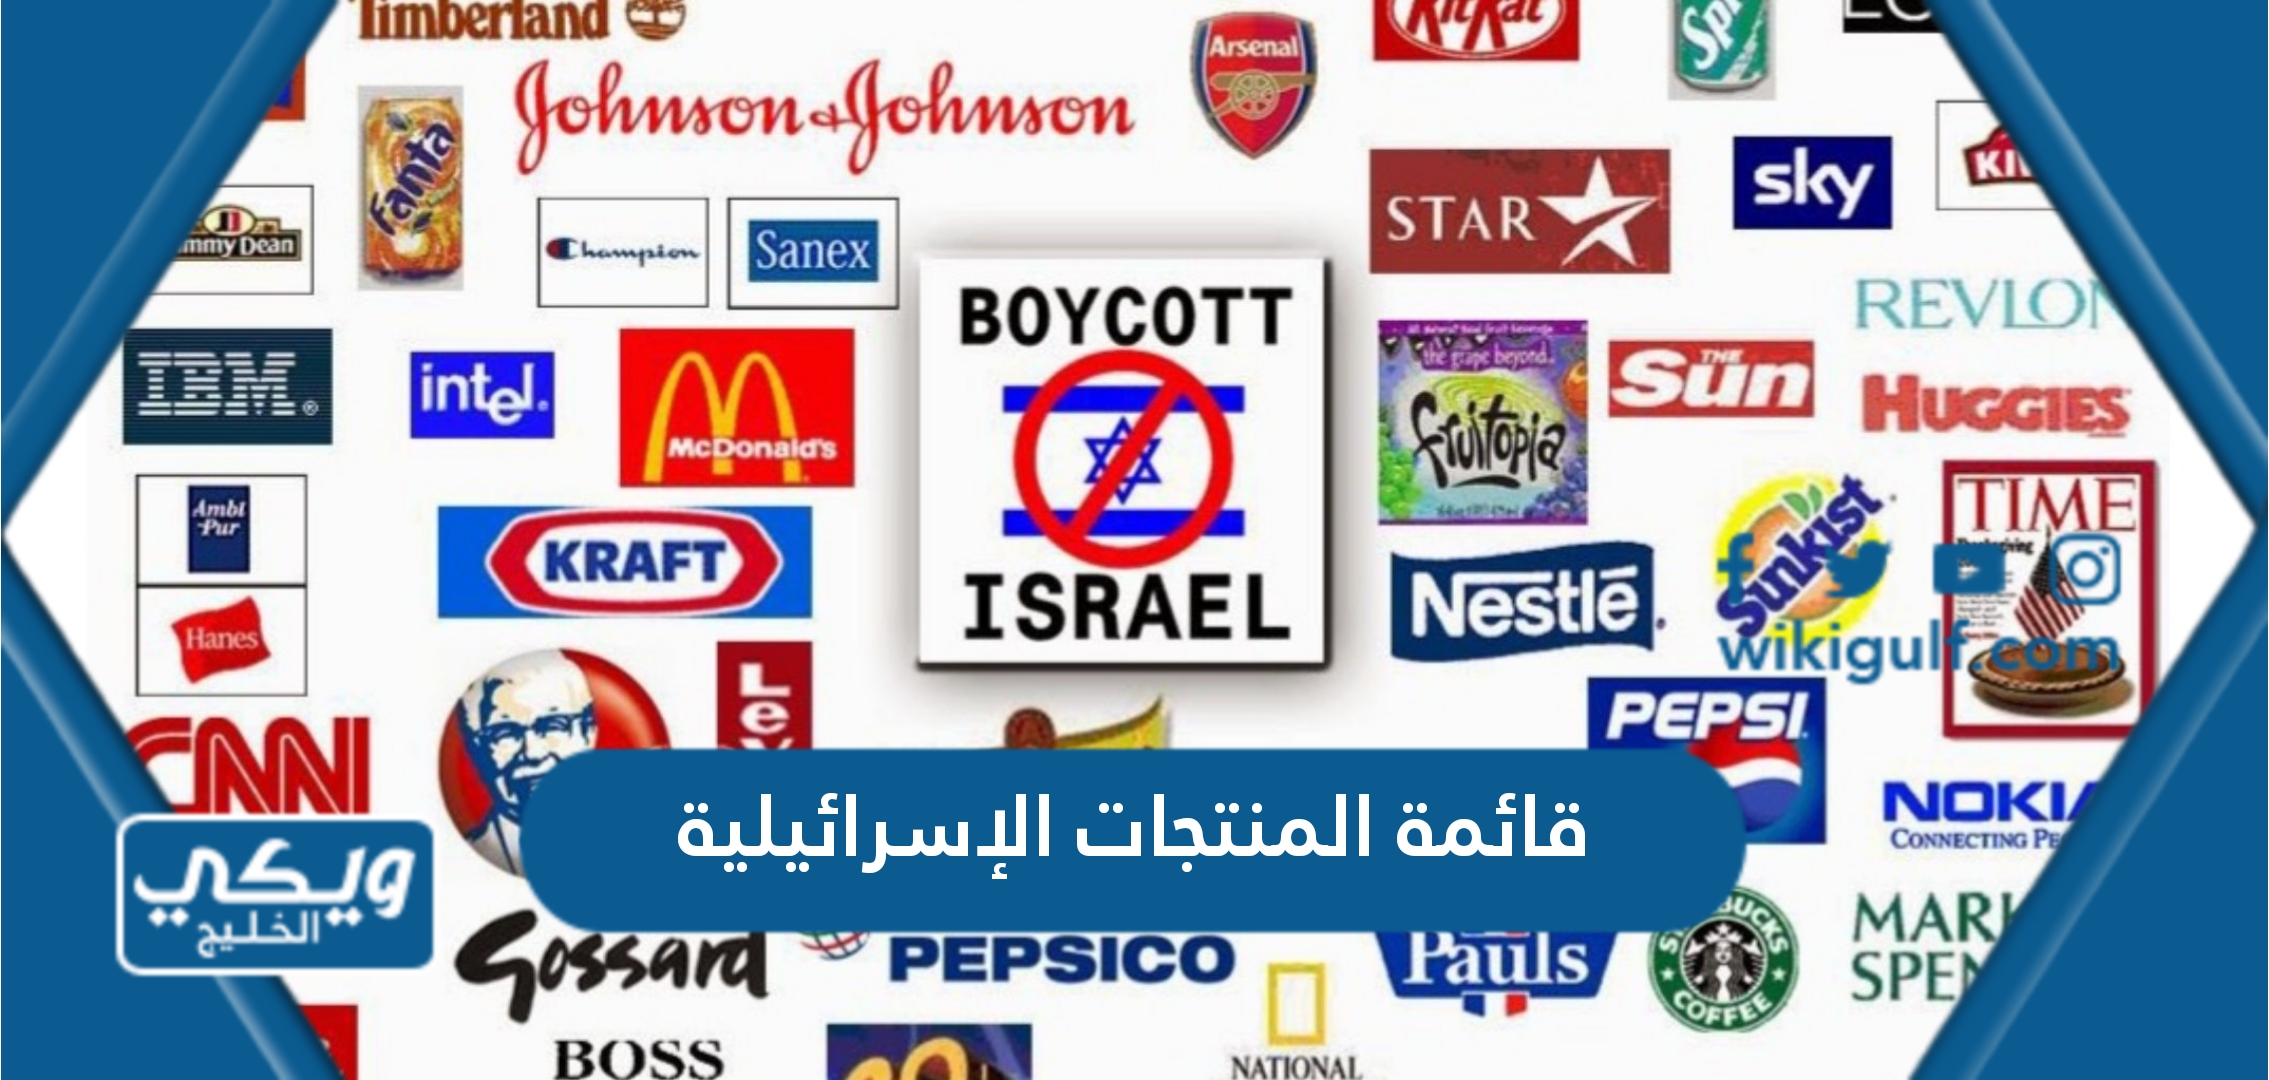 قائمة باسماء المنتجات الإسرائيلية في السعودية